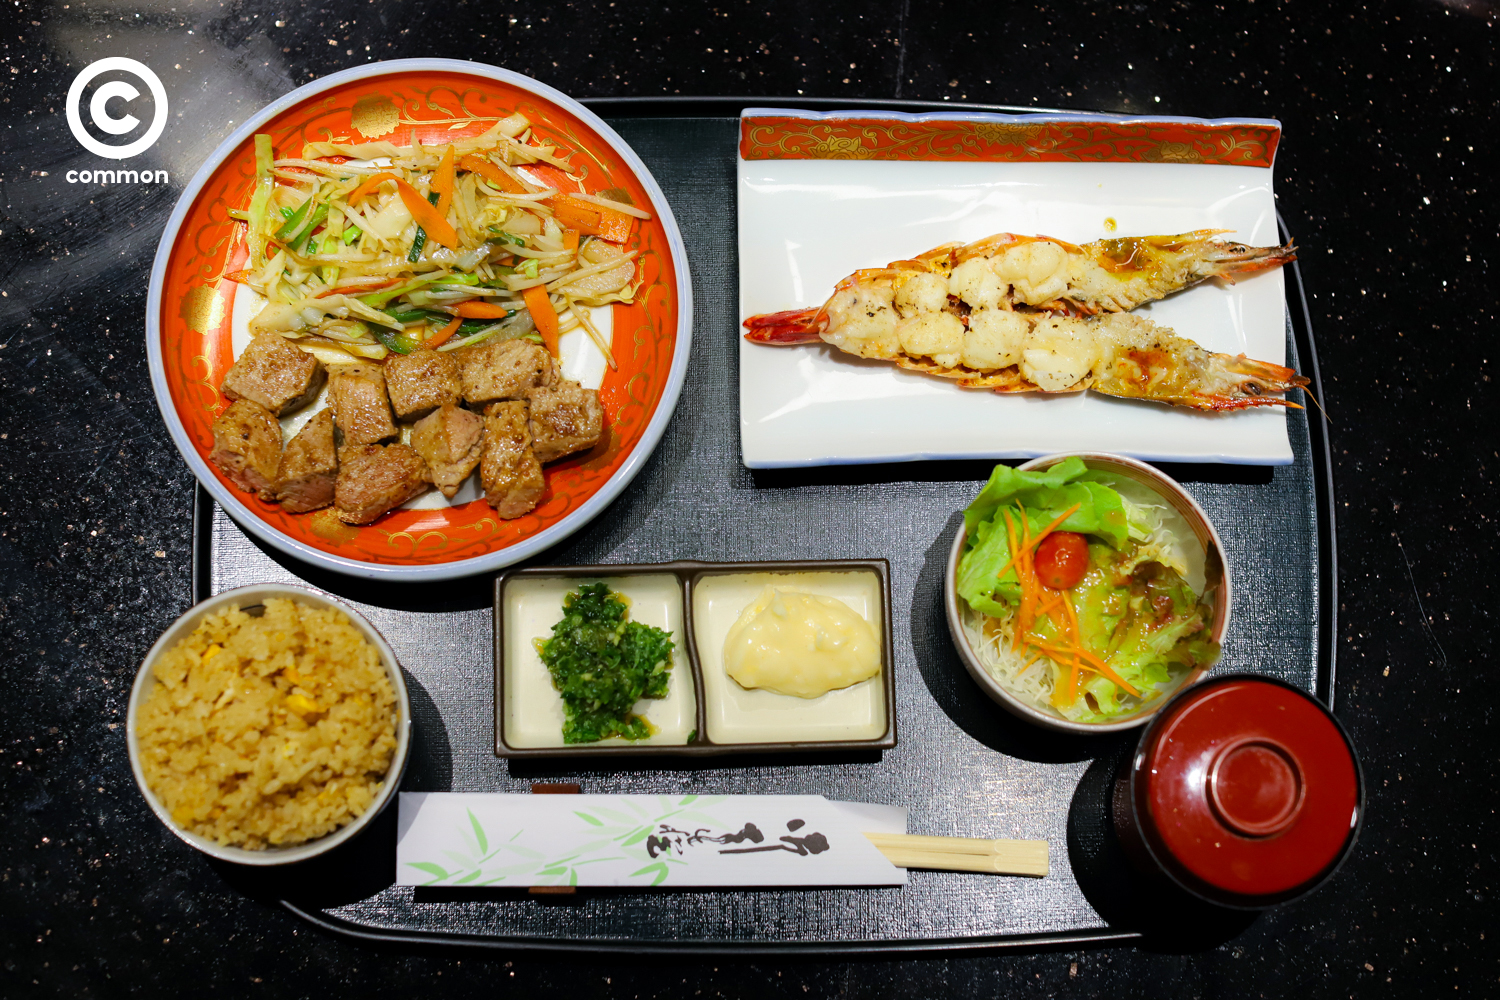 shogun Japanese restaurant